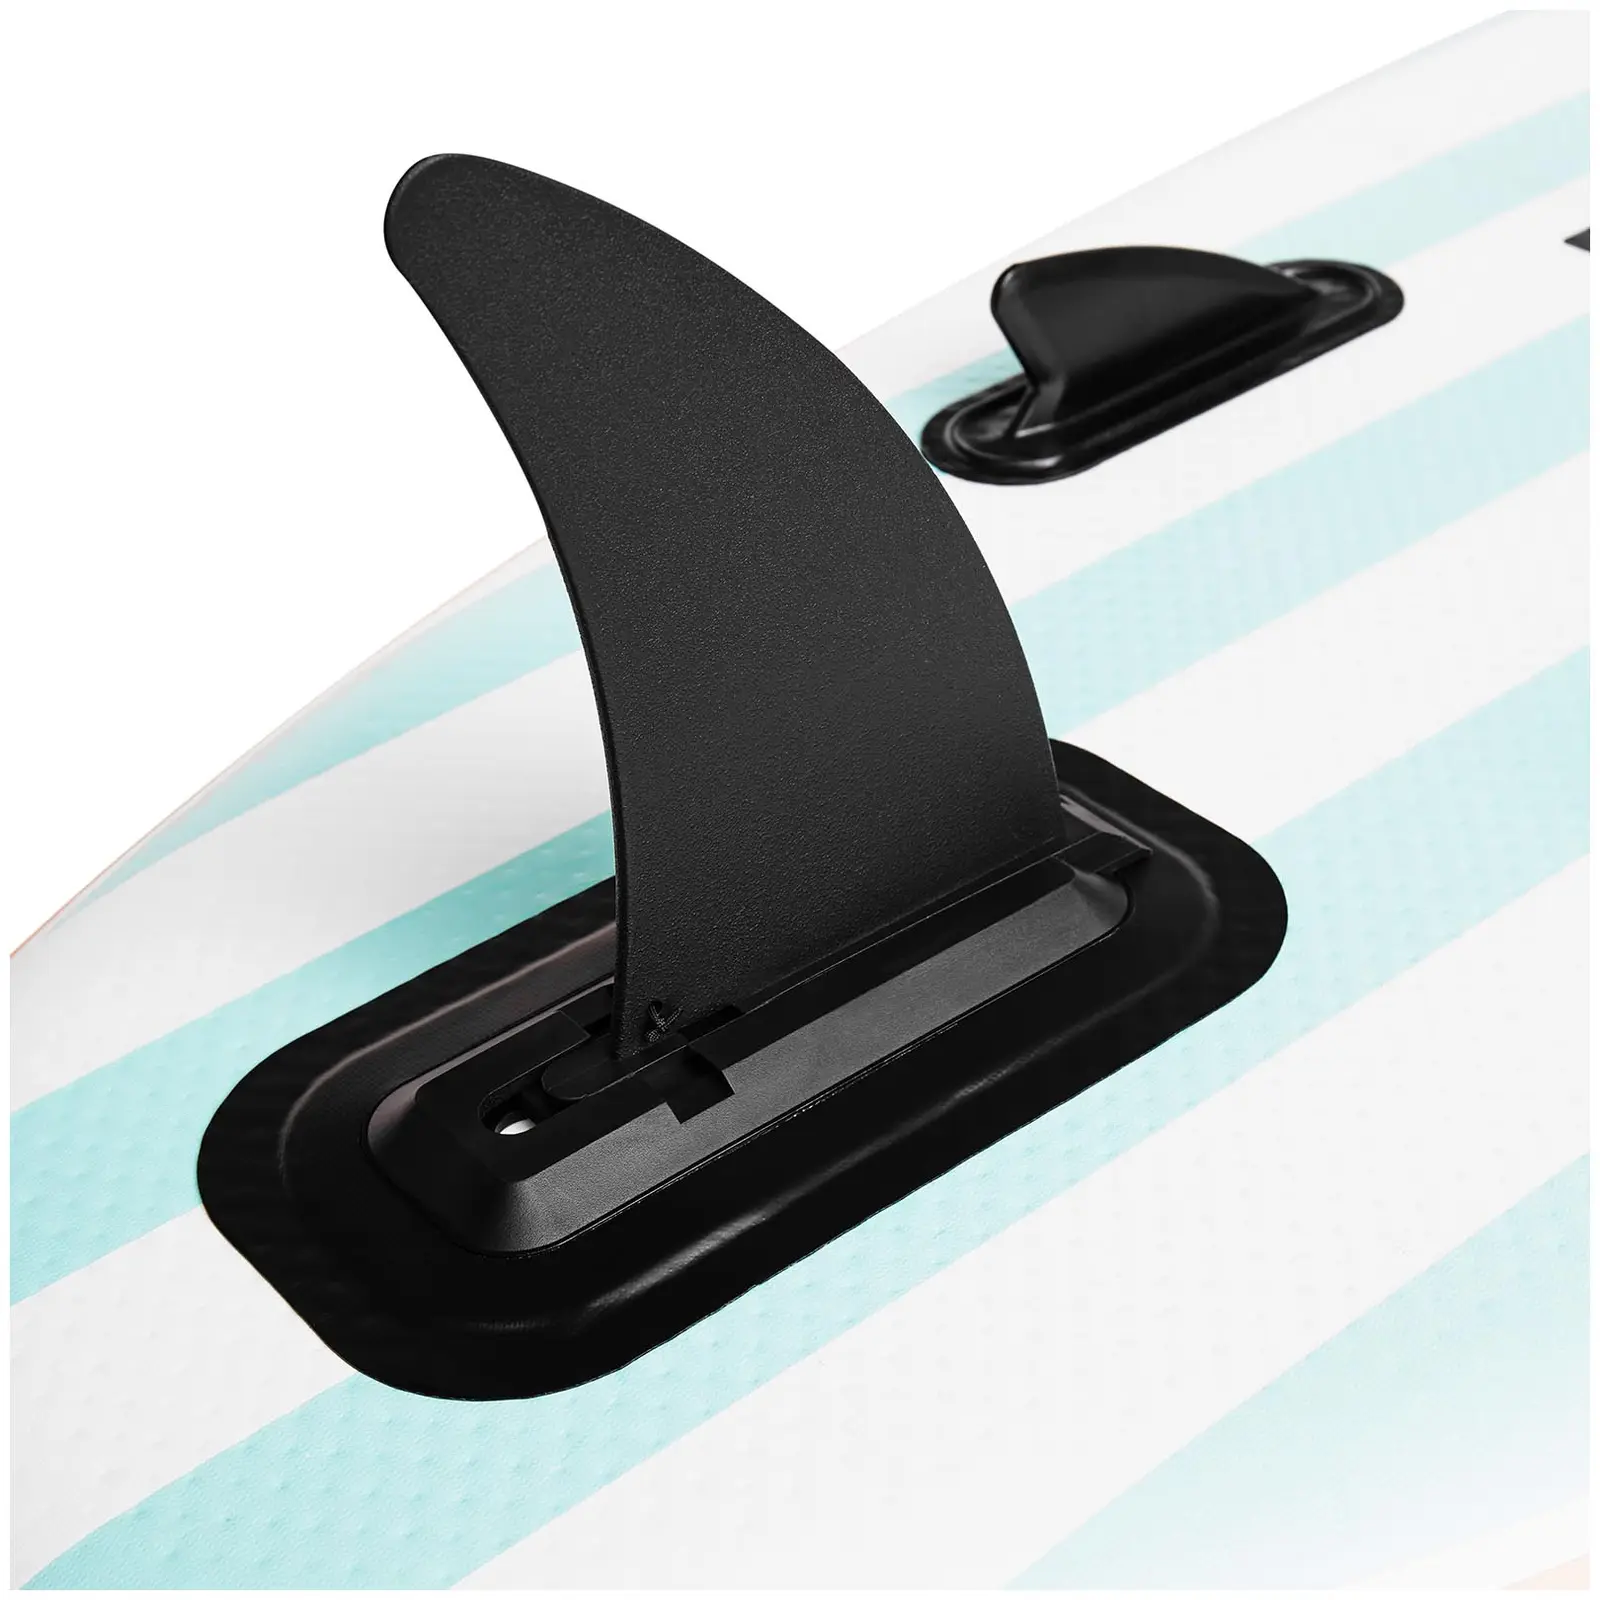 Nafukovací stand up paddleboard - mátová barva